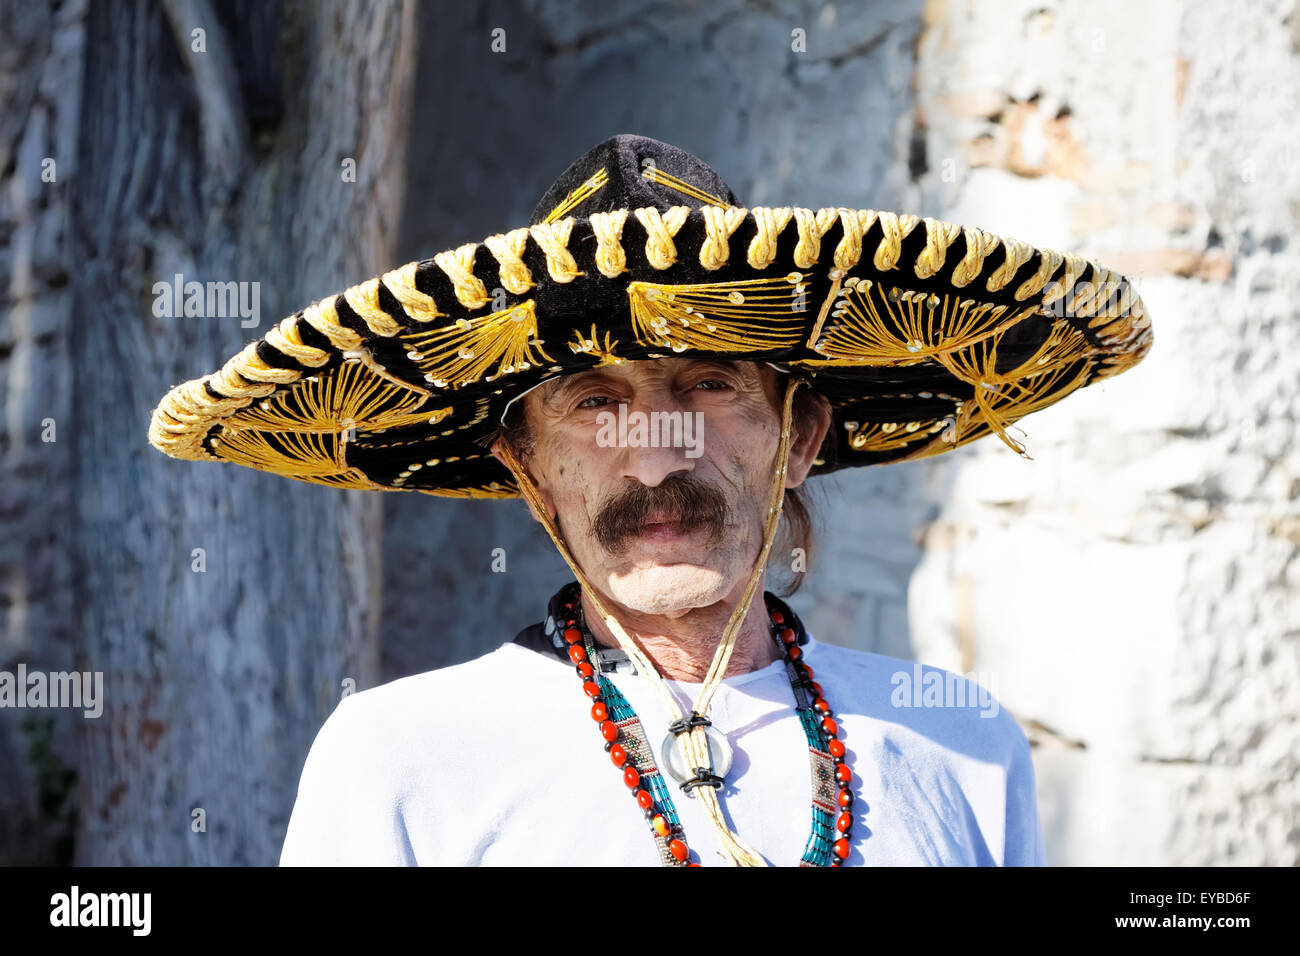 Mexican man with sombrero posing outdoor Stock Photo